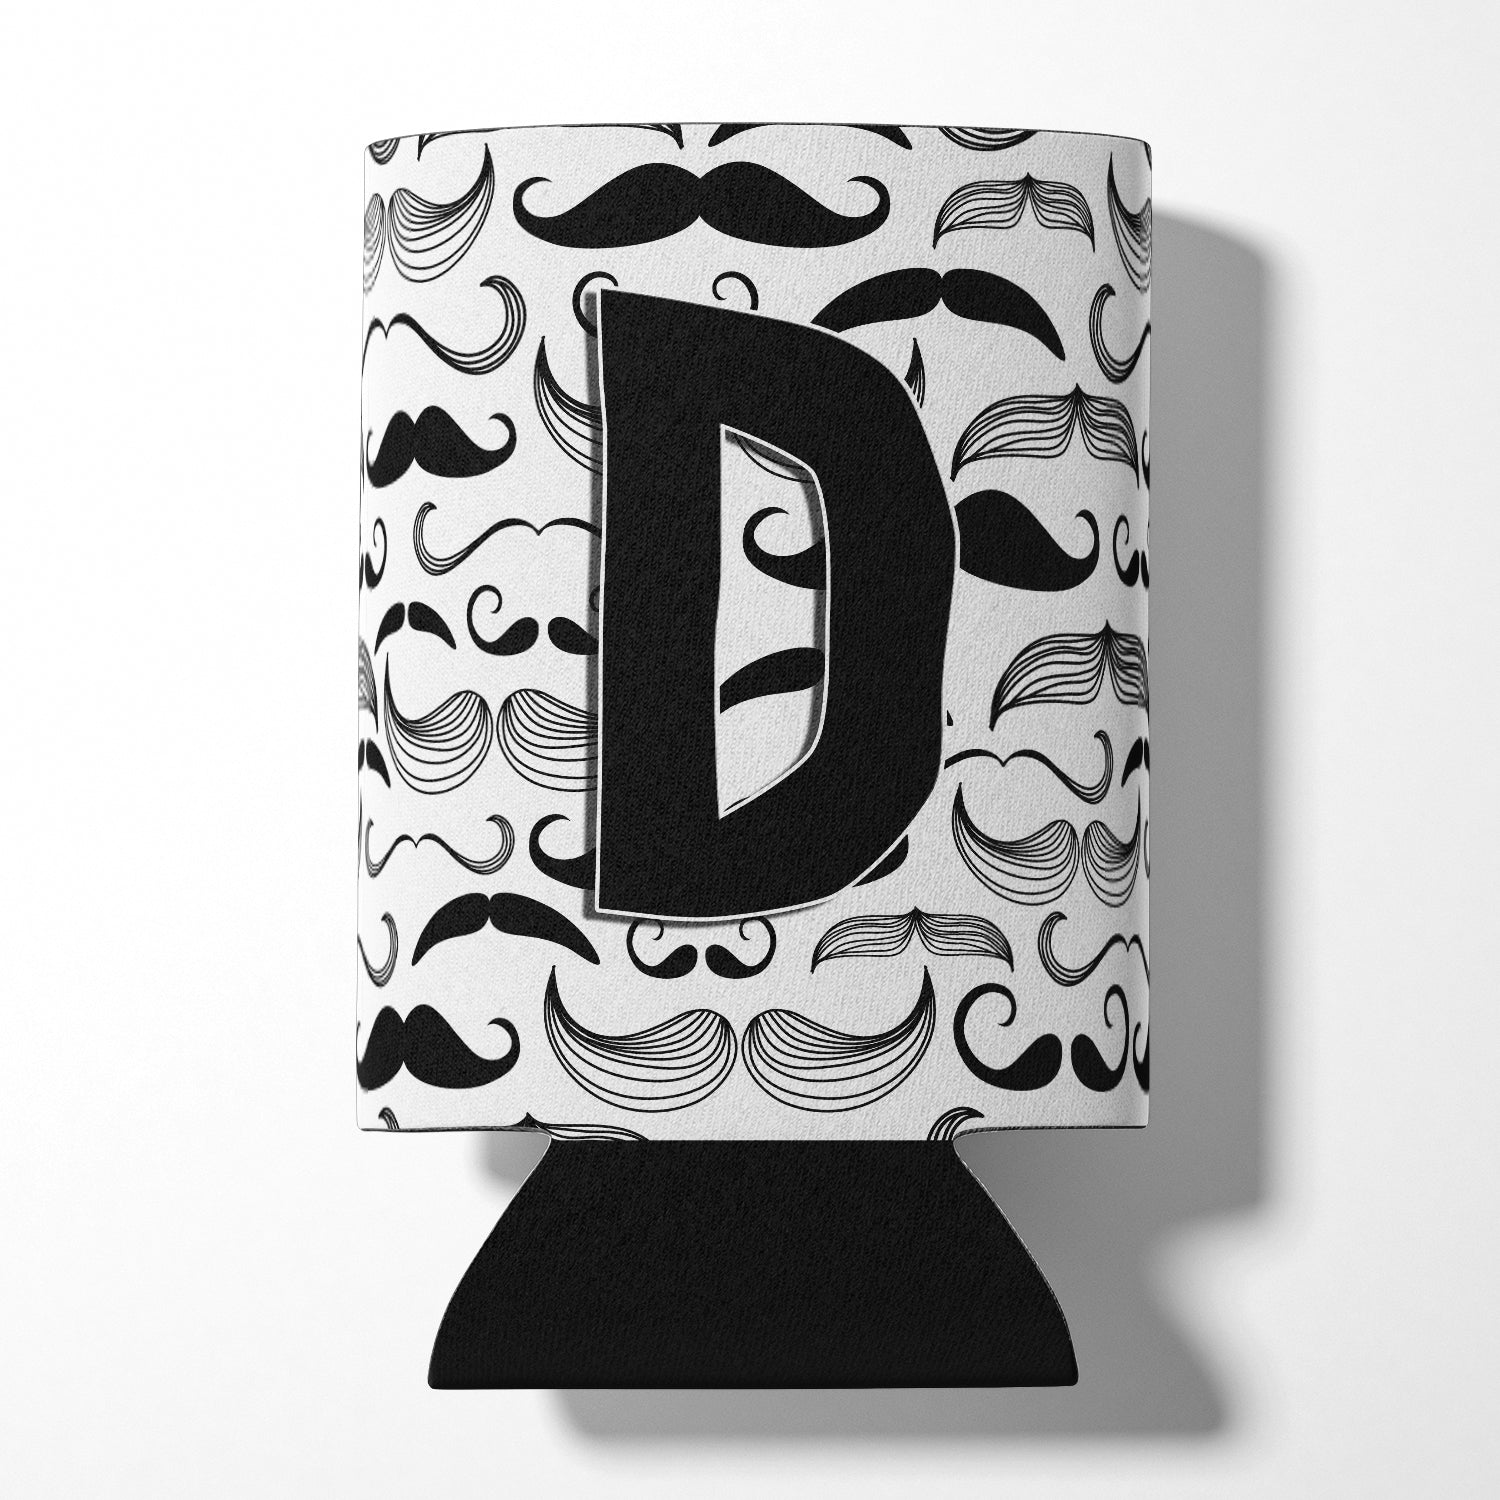 Letter D Moustache Initial Can or Bottle Hugger CJ2009-DCC.